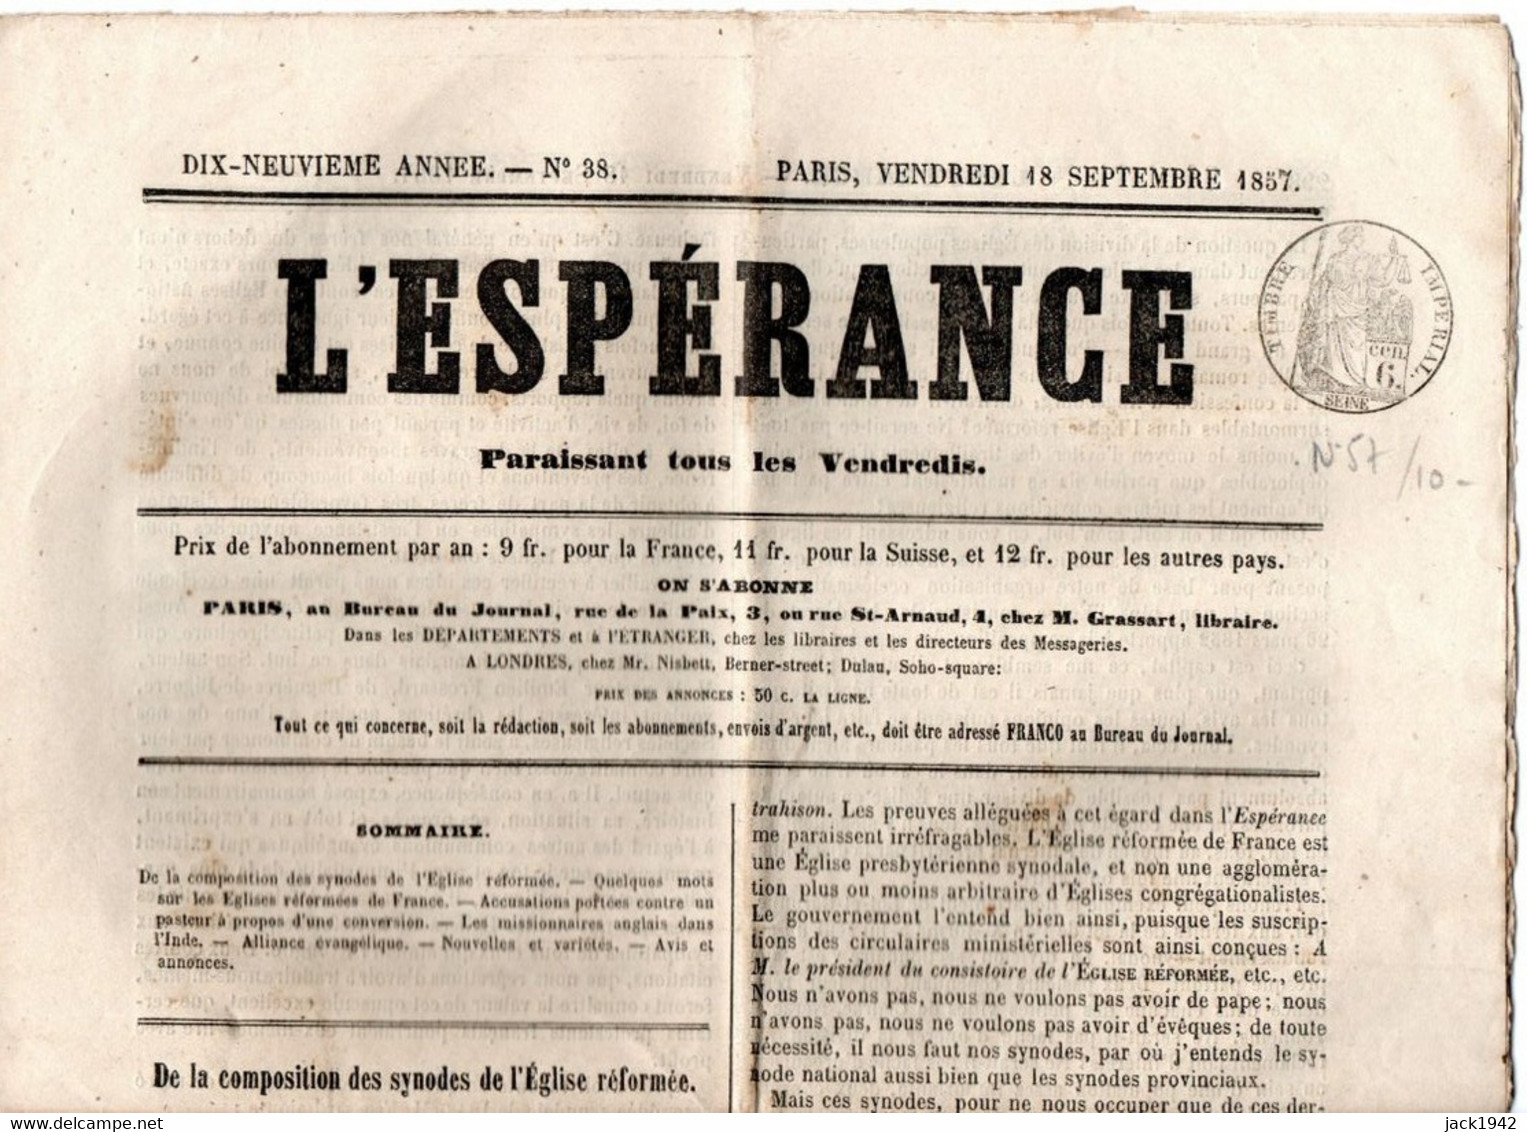 Journal L'Espérance Du 18 Septembre 1857, Avec Timbre Humide " Timbre / Impérial 6 Centimes" - Periódicos